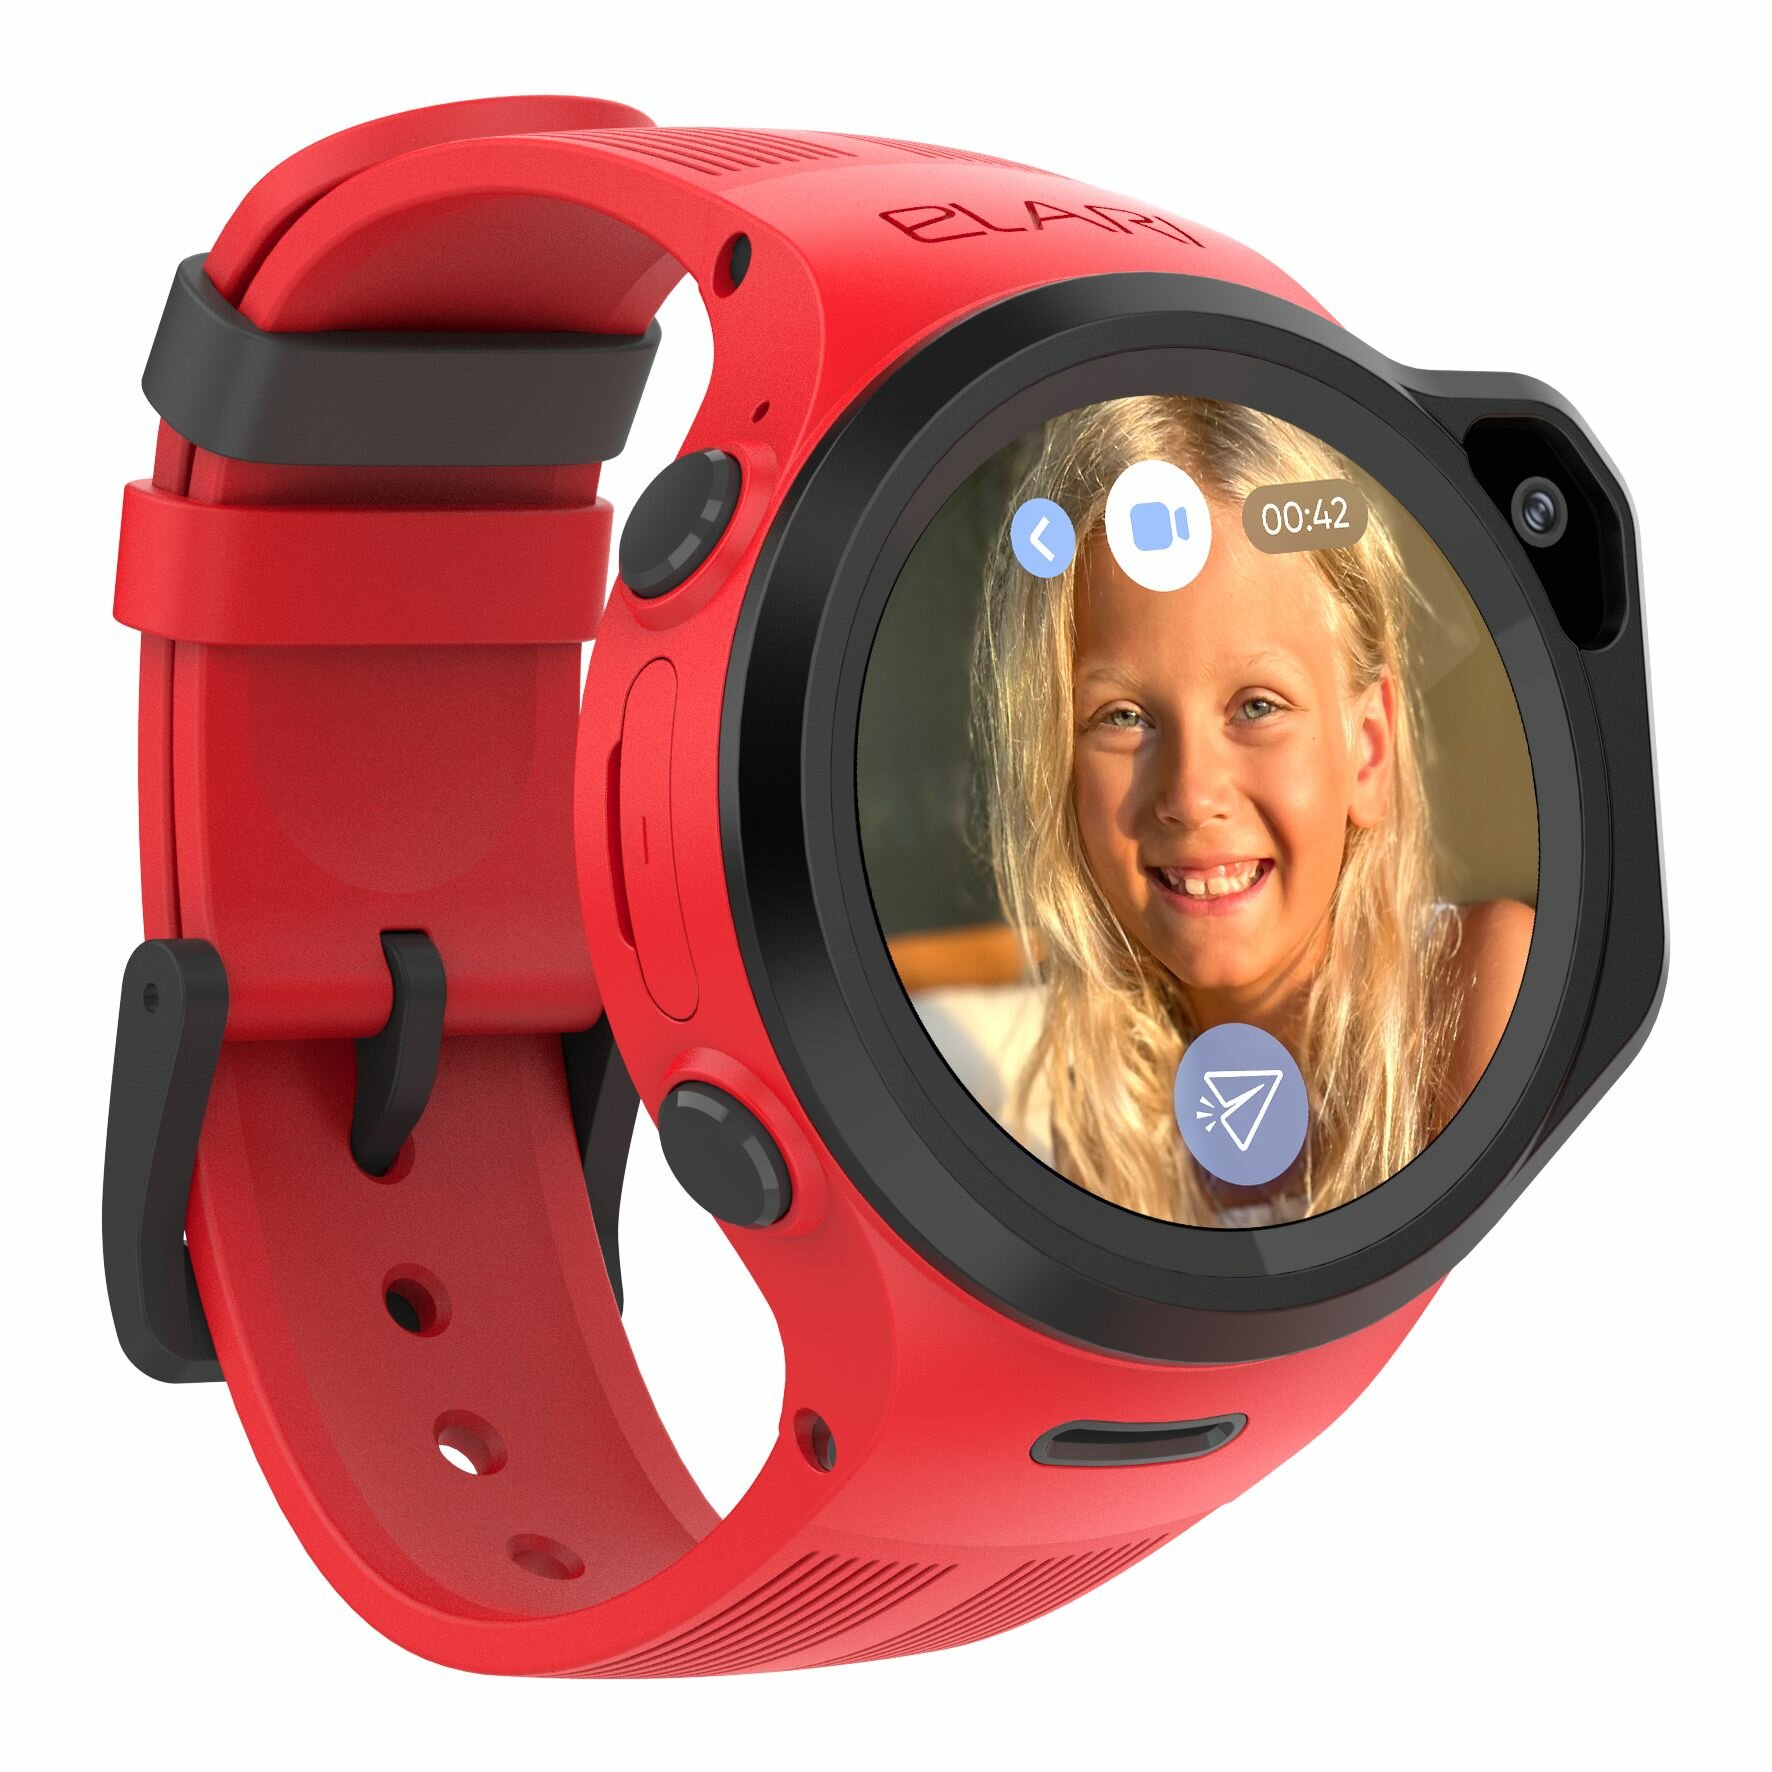 Elari 4GR M Red детские часы-телефон - красные, 4G, nano-SIM, Маруся, сенсорный дисплей 1.3 IPS 240х240